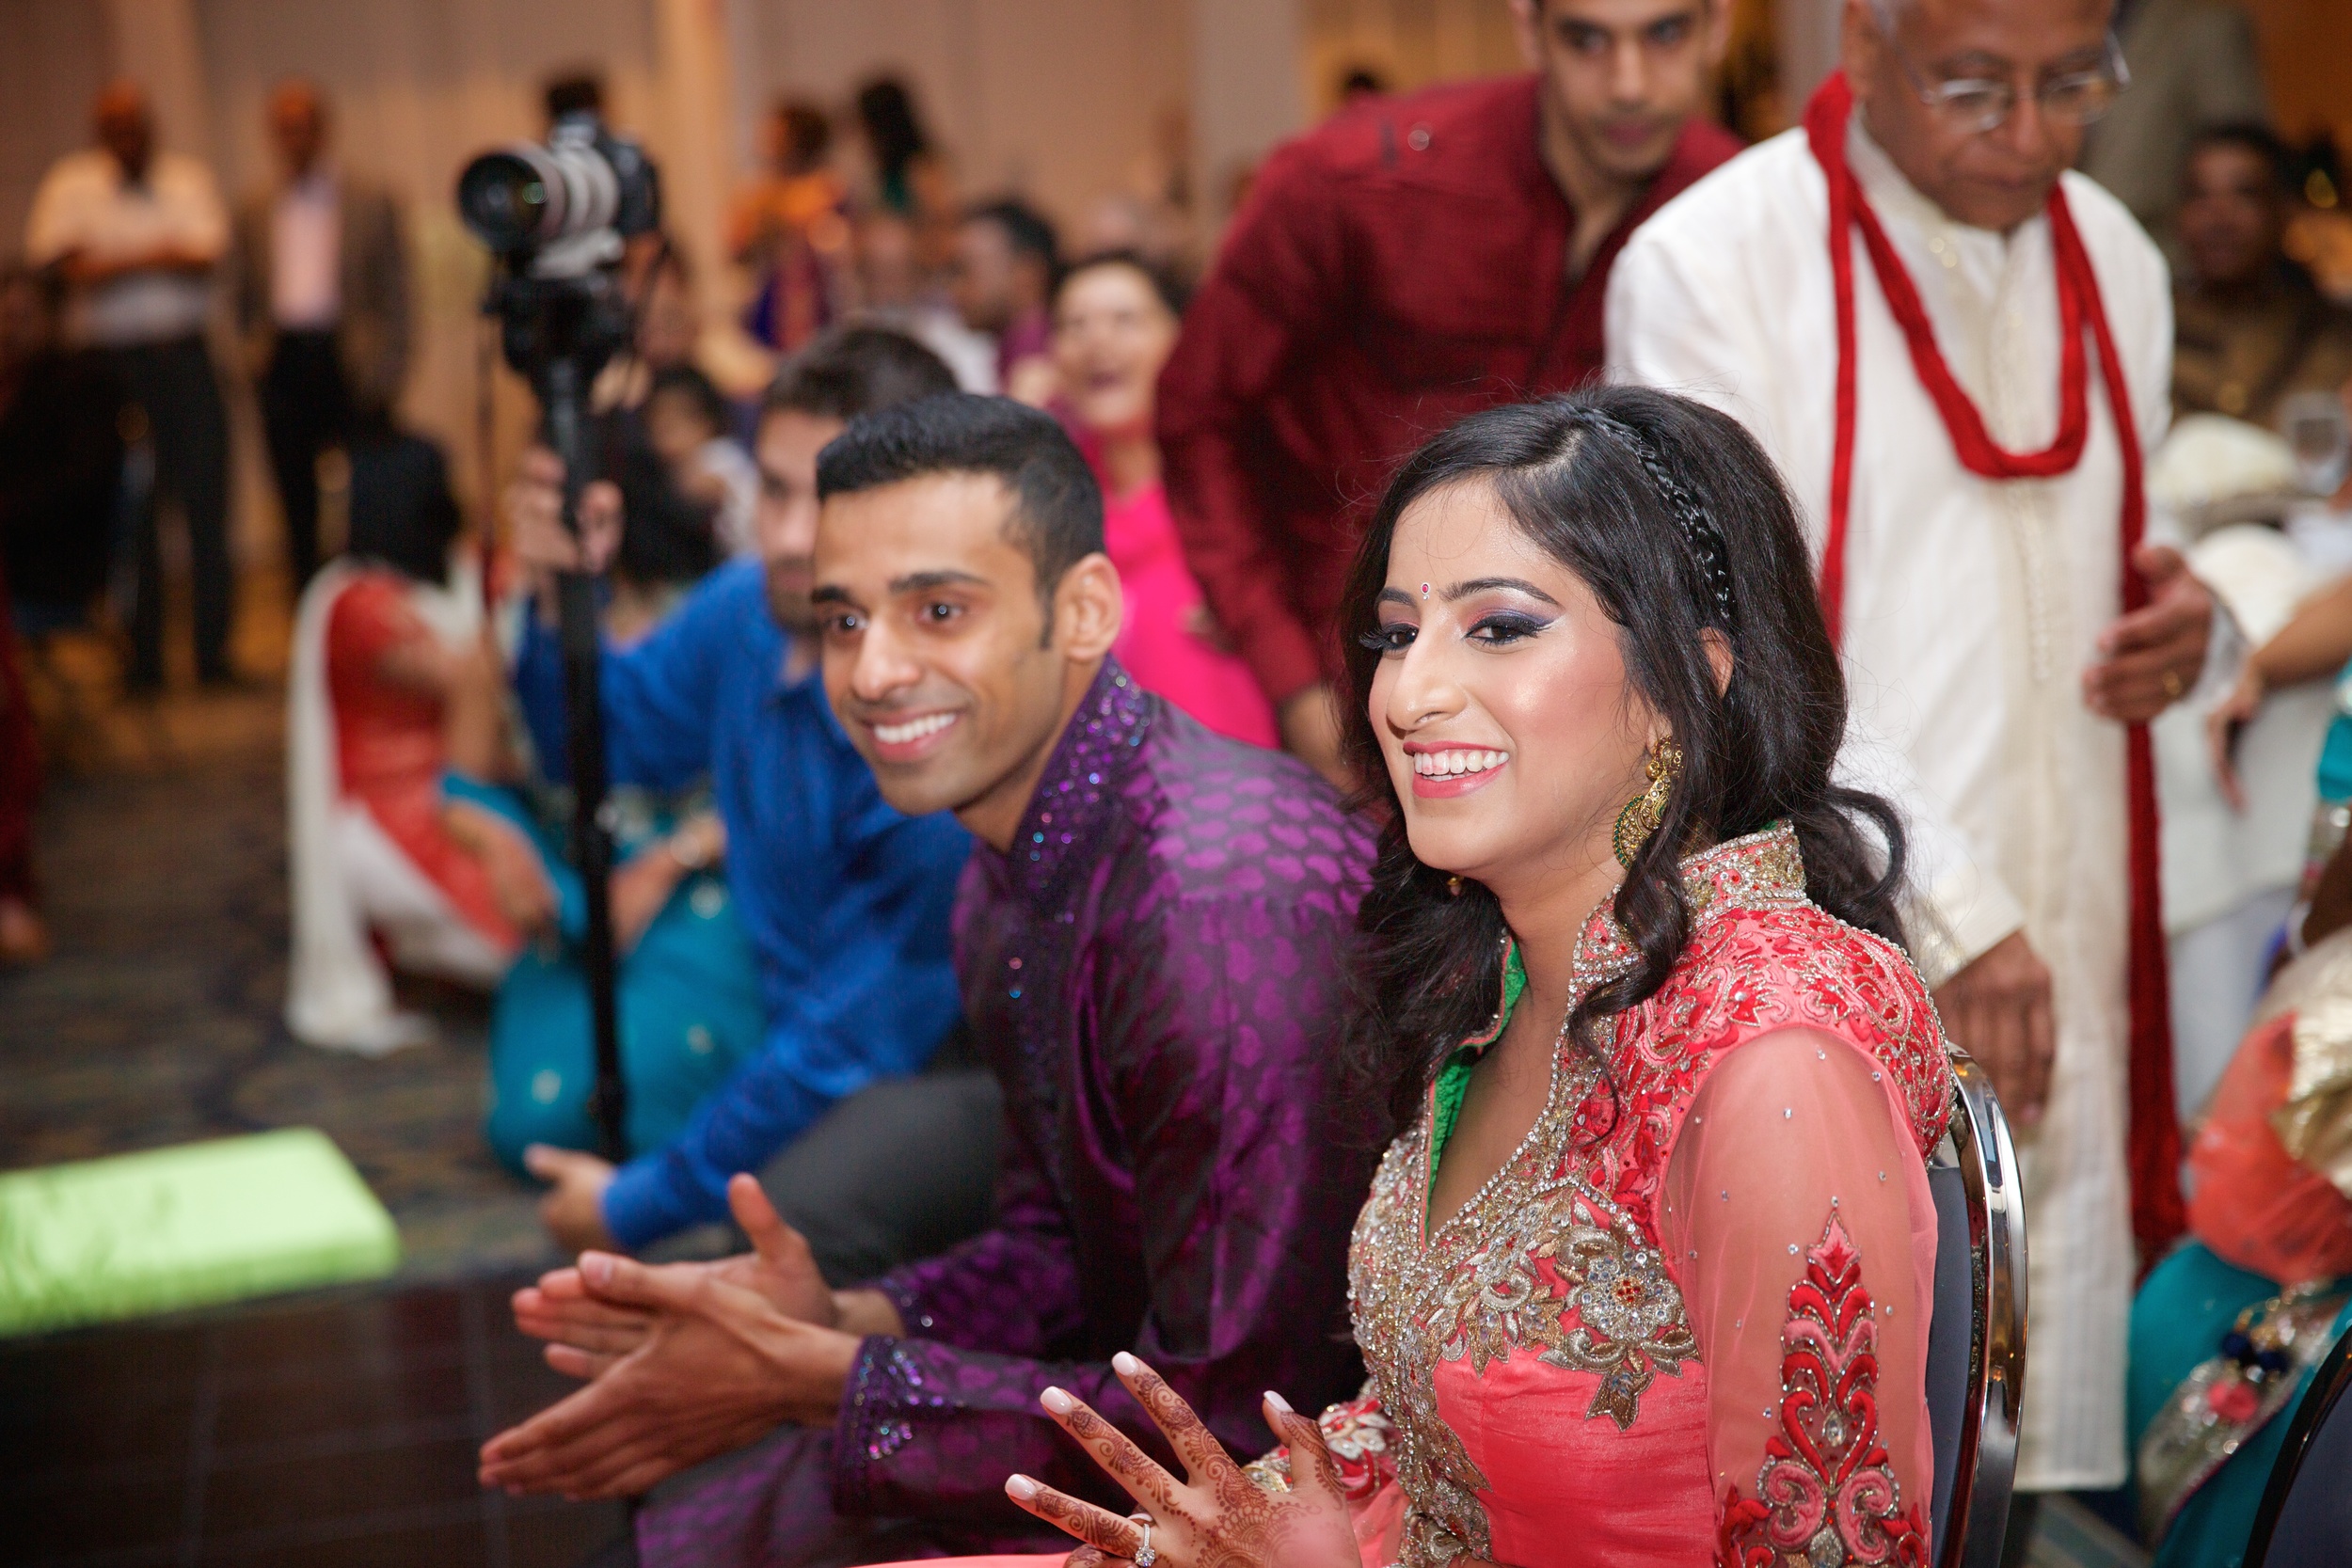 Le Cape Weddings - Reinnassance Convention Center in Schaumburg Weddings - Indian Wedding - Karthik and Megan 2150.jpg